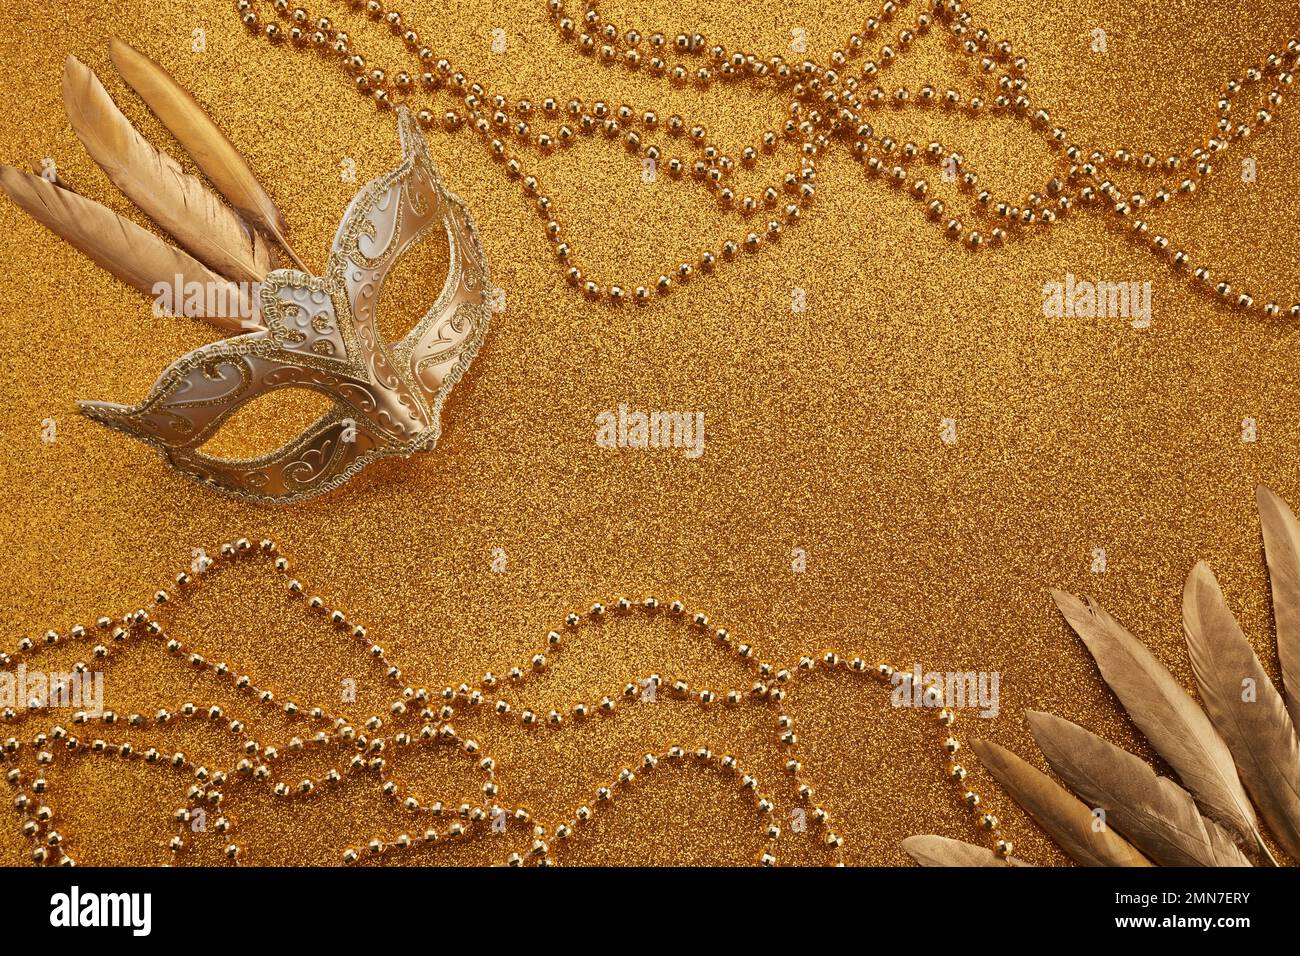 Mardi gras ou masque de carnaval avec perles sur fond doré brillant. Masque vénitien. Banque D'Images